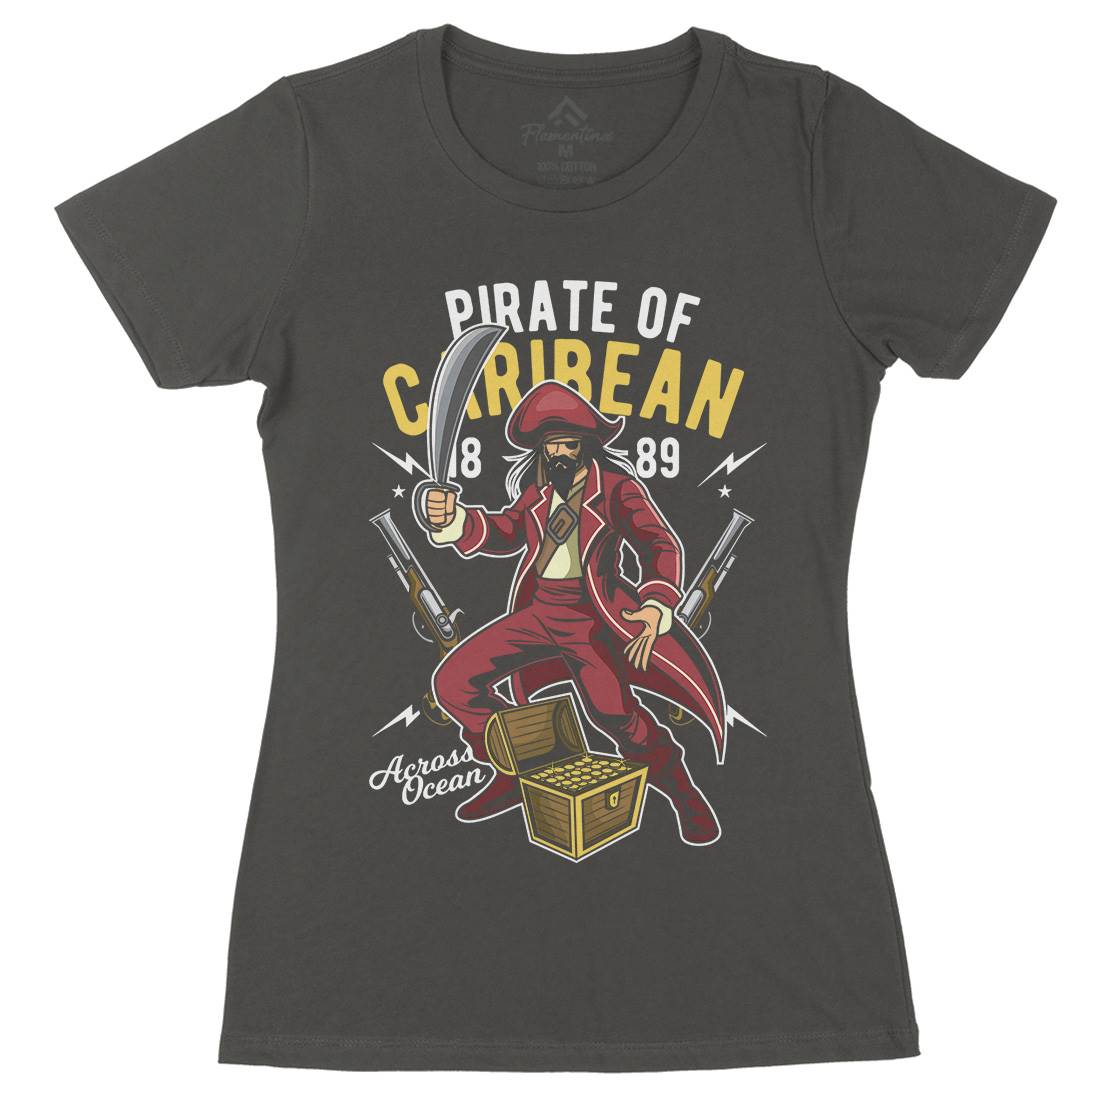 Pirate Caribbean Womens Organic Crew Neck T-Shirt Navy C417